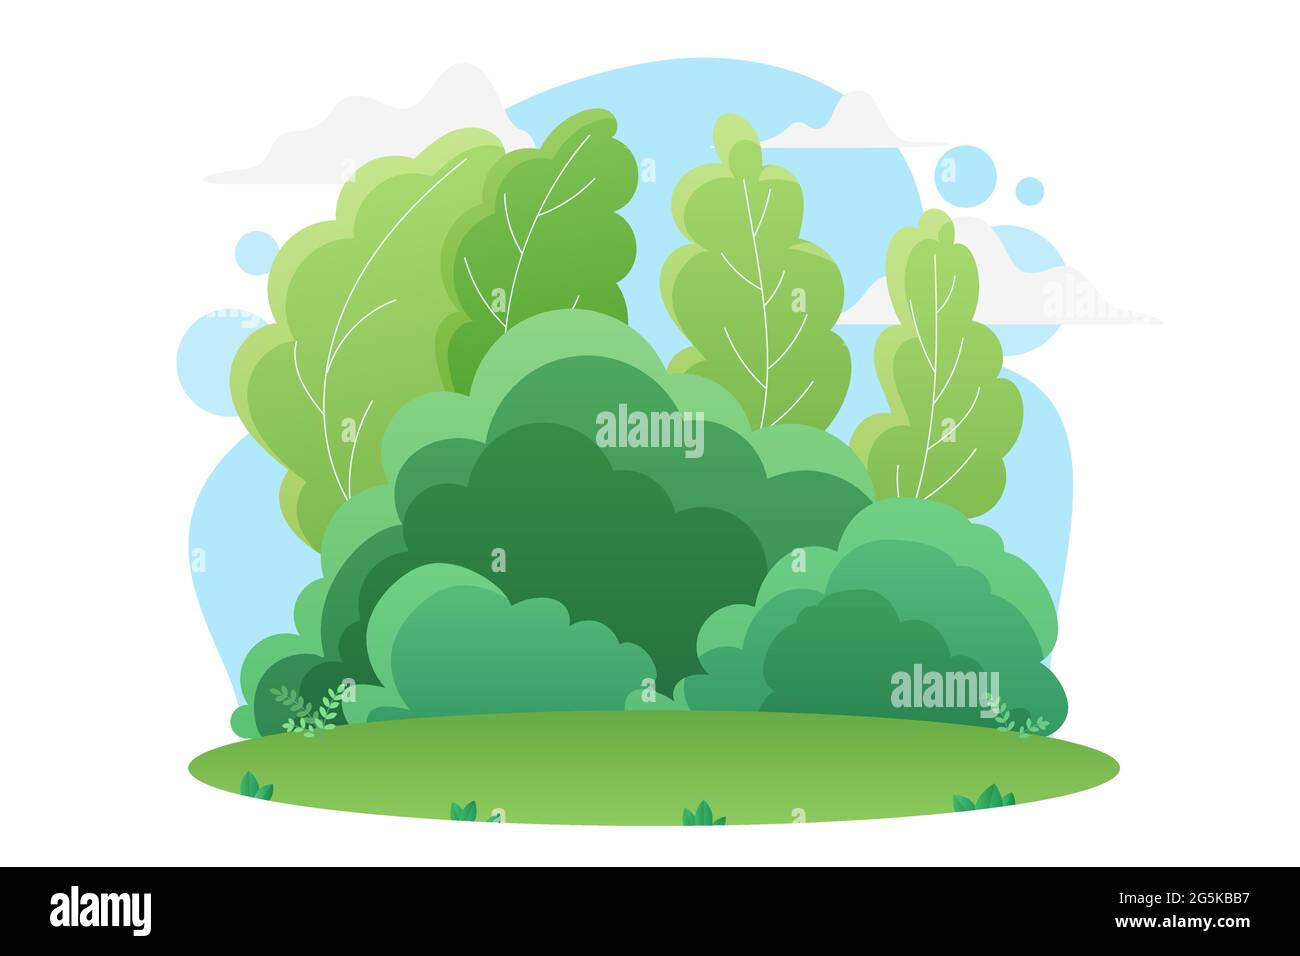 Sommer grünen Wald oder Park Natur Landschaft Vektorgrafik. Cartoon helles Gras Grün in Wiese oder Rasen, natürliche Bäume und Sträucher in Parklandschaft Sommer isoliert auf weiß Stock Vektor